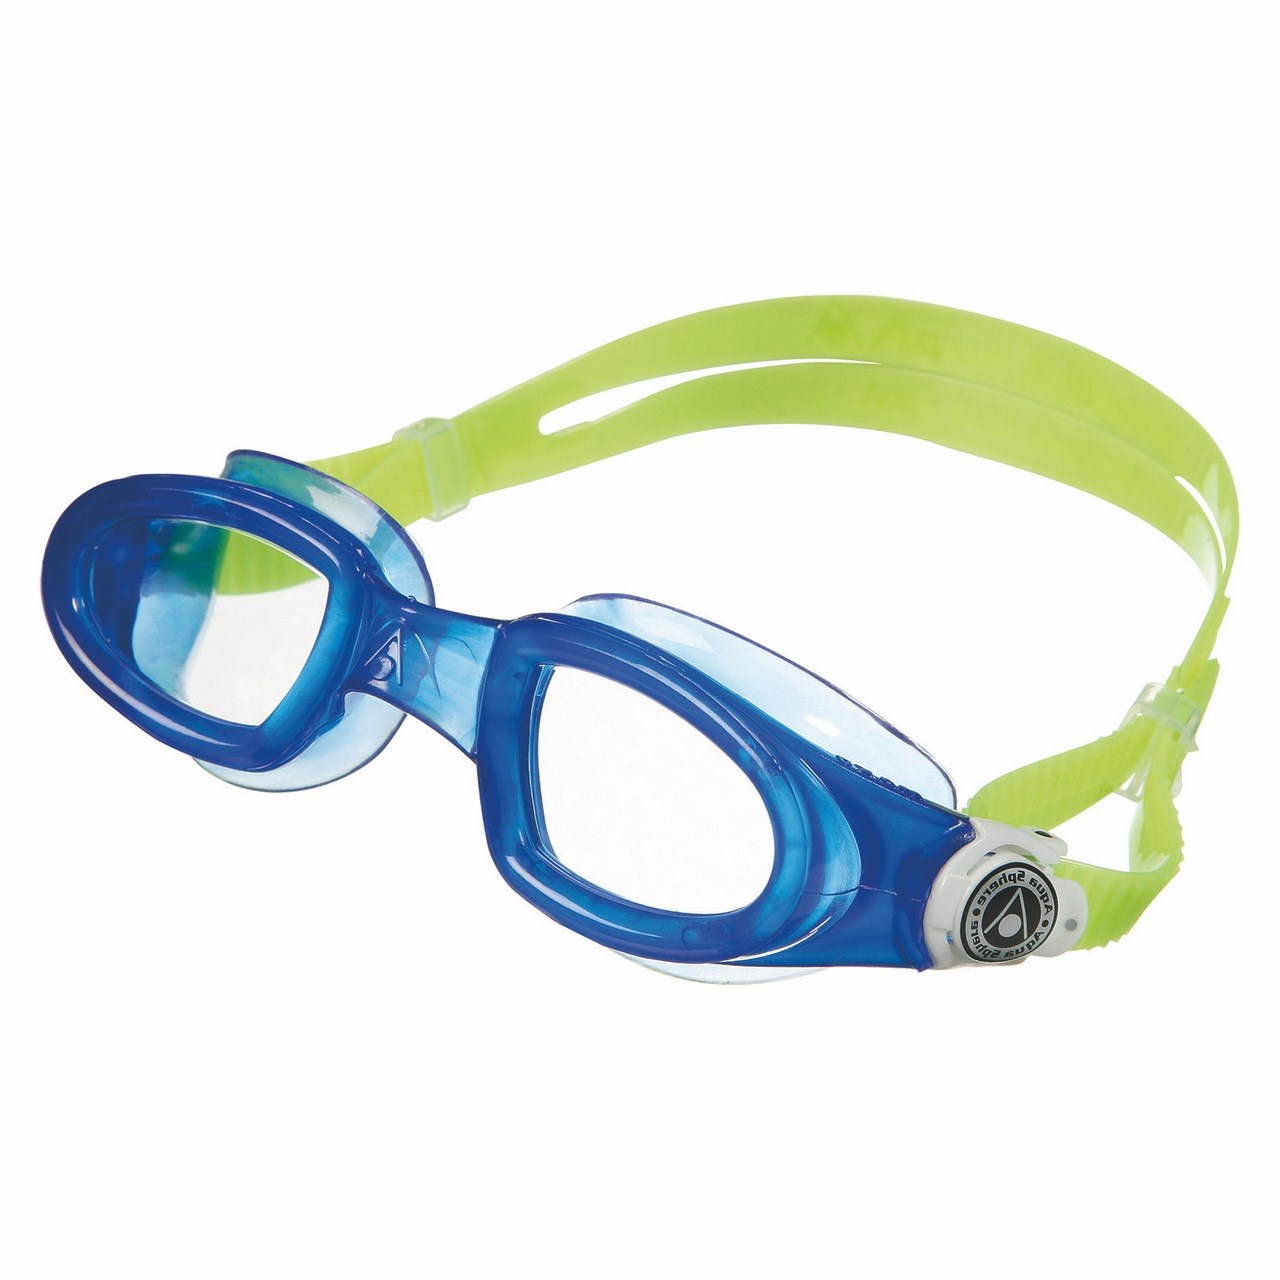 عینک شنای آکوا اسفیر مدل Mako لنز شفاف